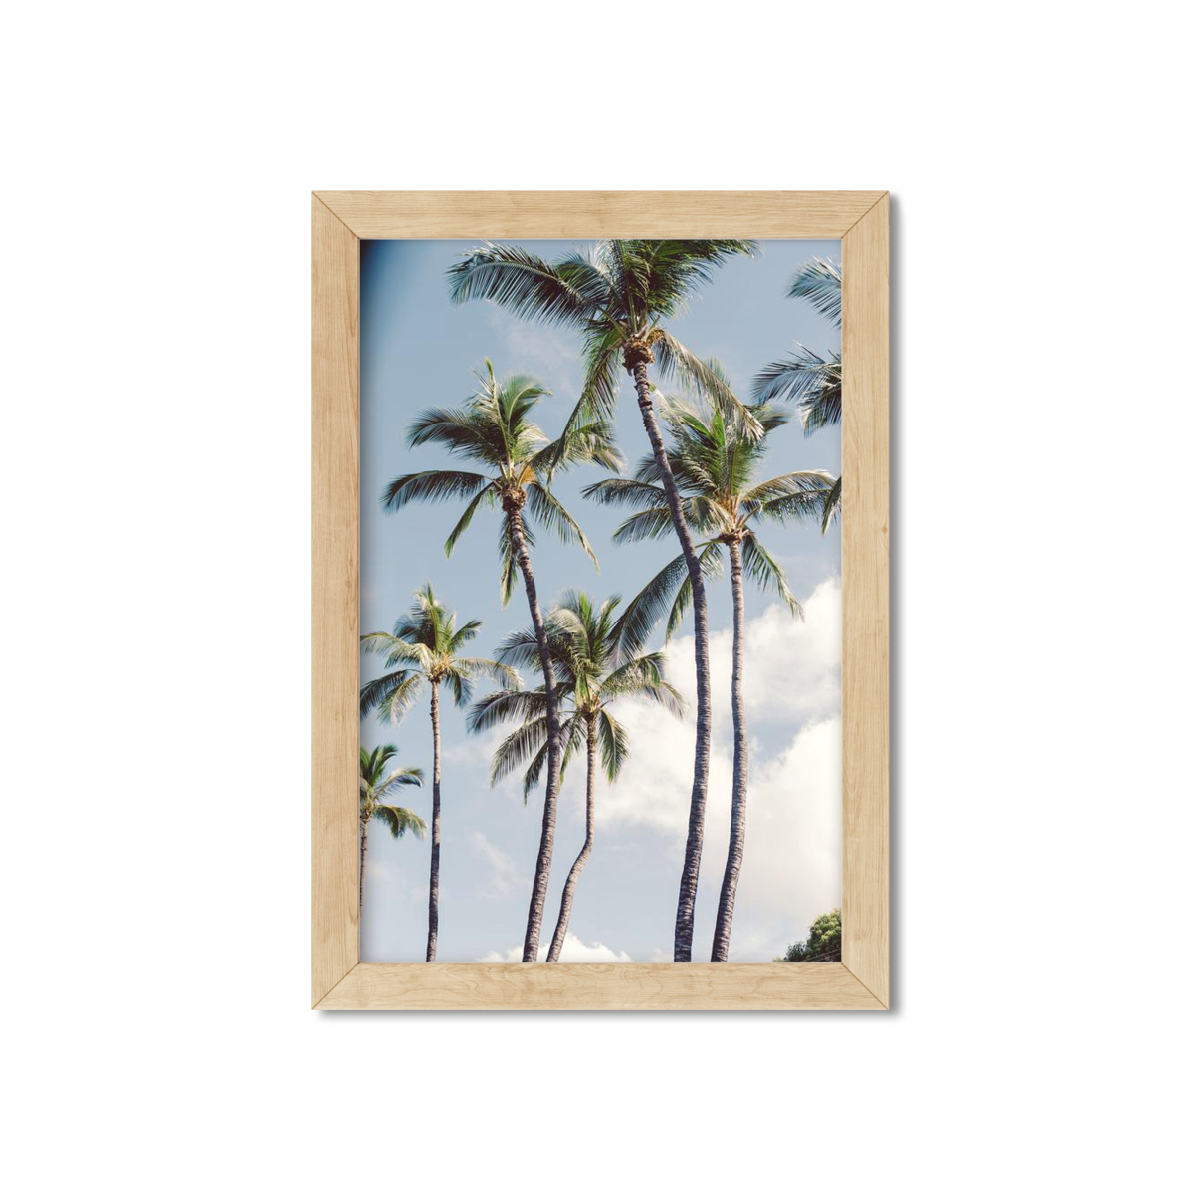 HAWAIIAN PALM TREES NO. 3